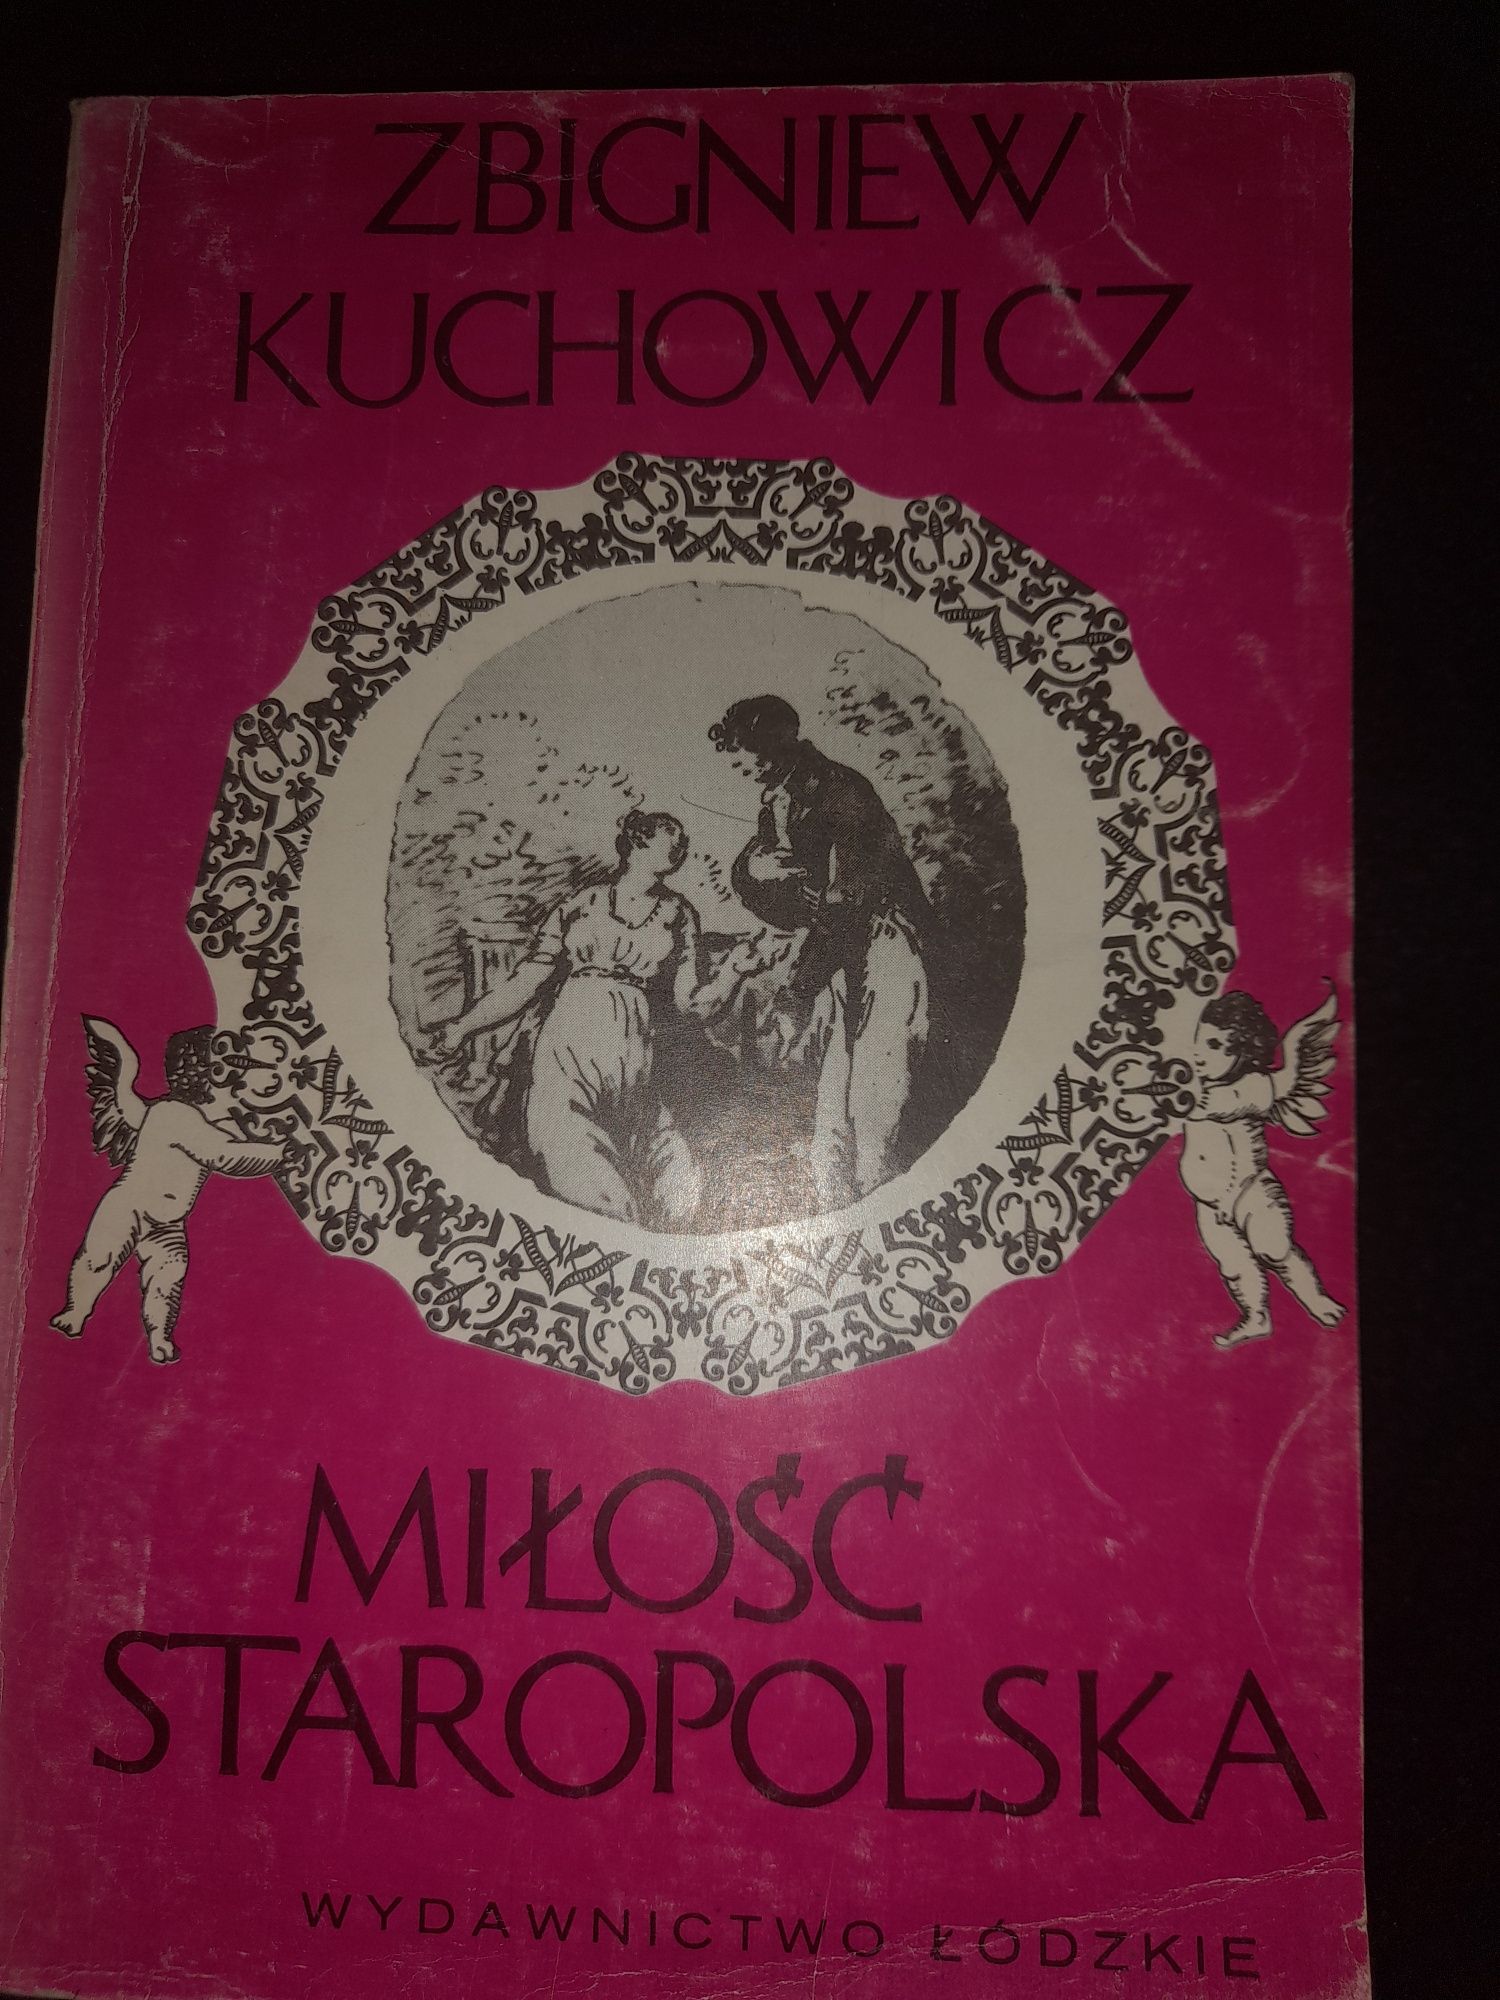 Zbigniew Kuchowicz - Miłość staropolska